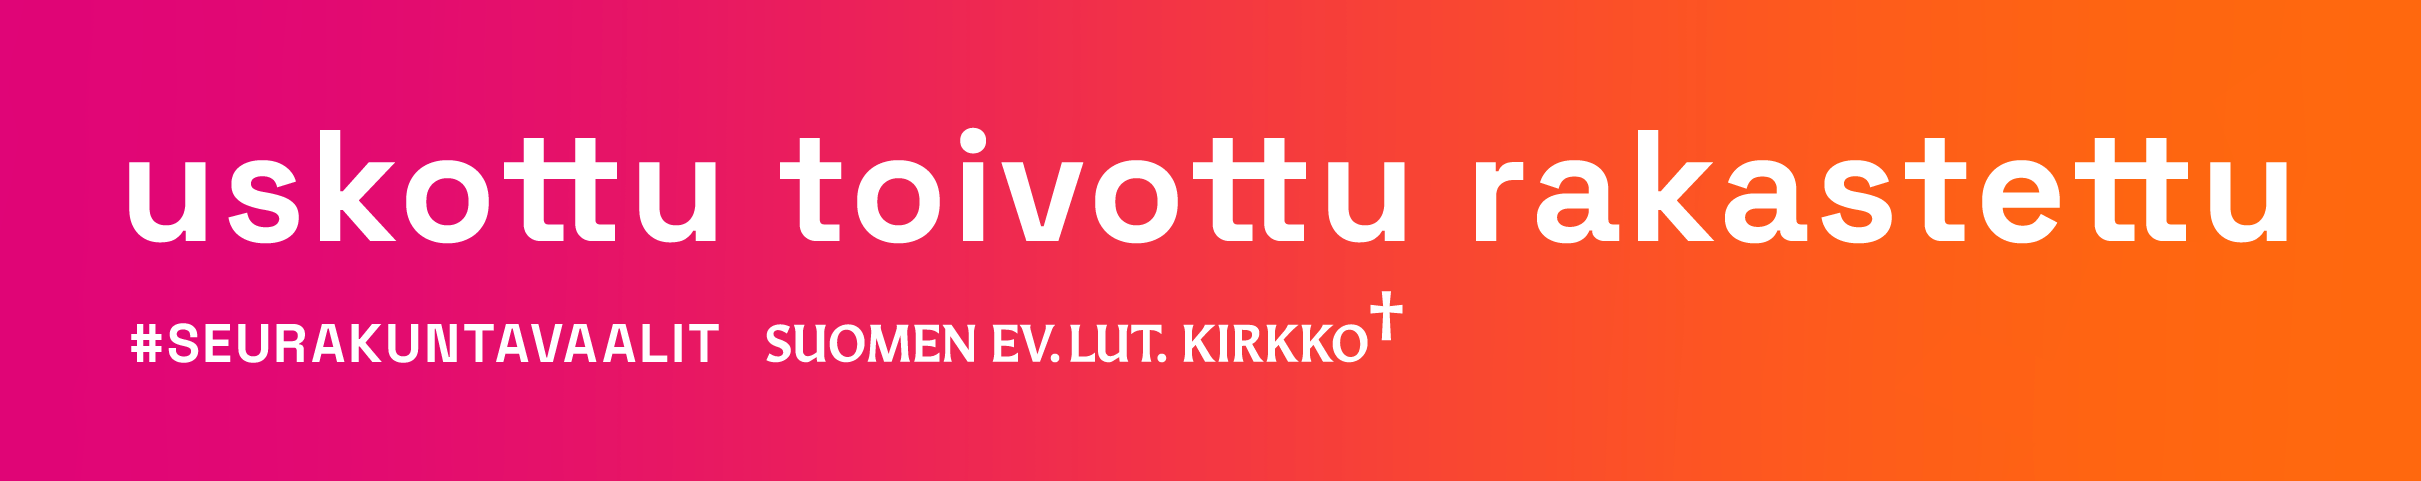 uskottu toivottu rakastettu
#seurakuntavaalit suomen ev.lut.kirkko
logo